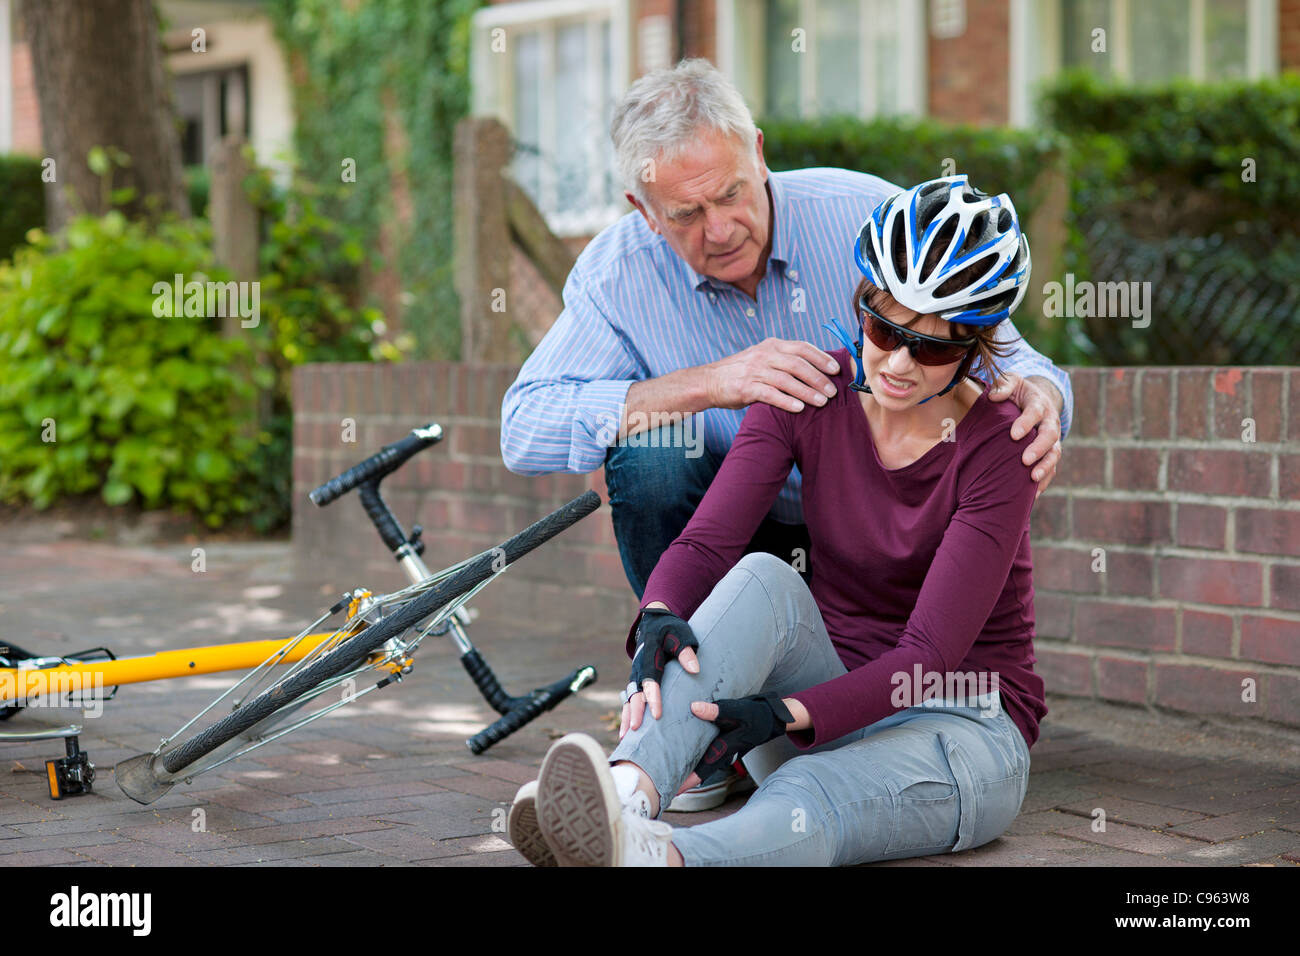 Fahrradunfall. Menschen helfen, einen Radfahrer, der vom Fahrrad gefallen  ist Stockfotografie - Alamy